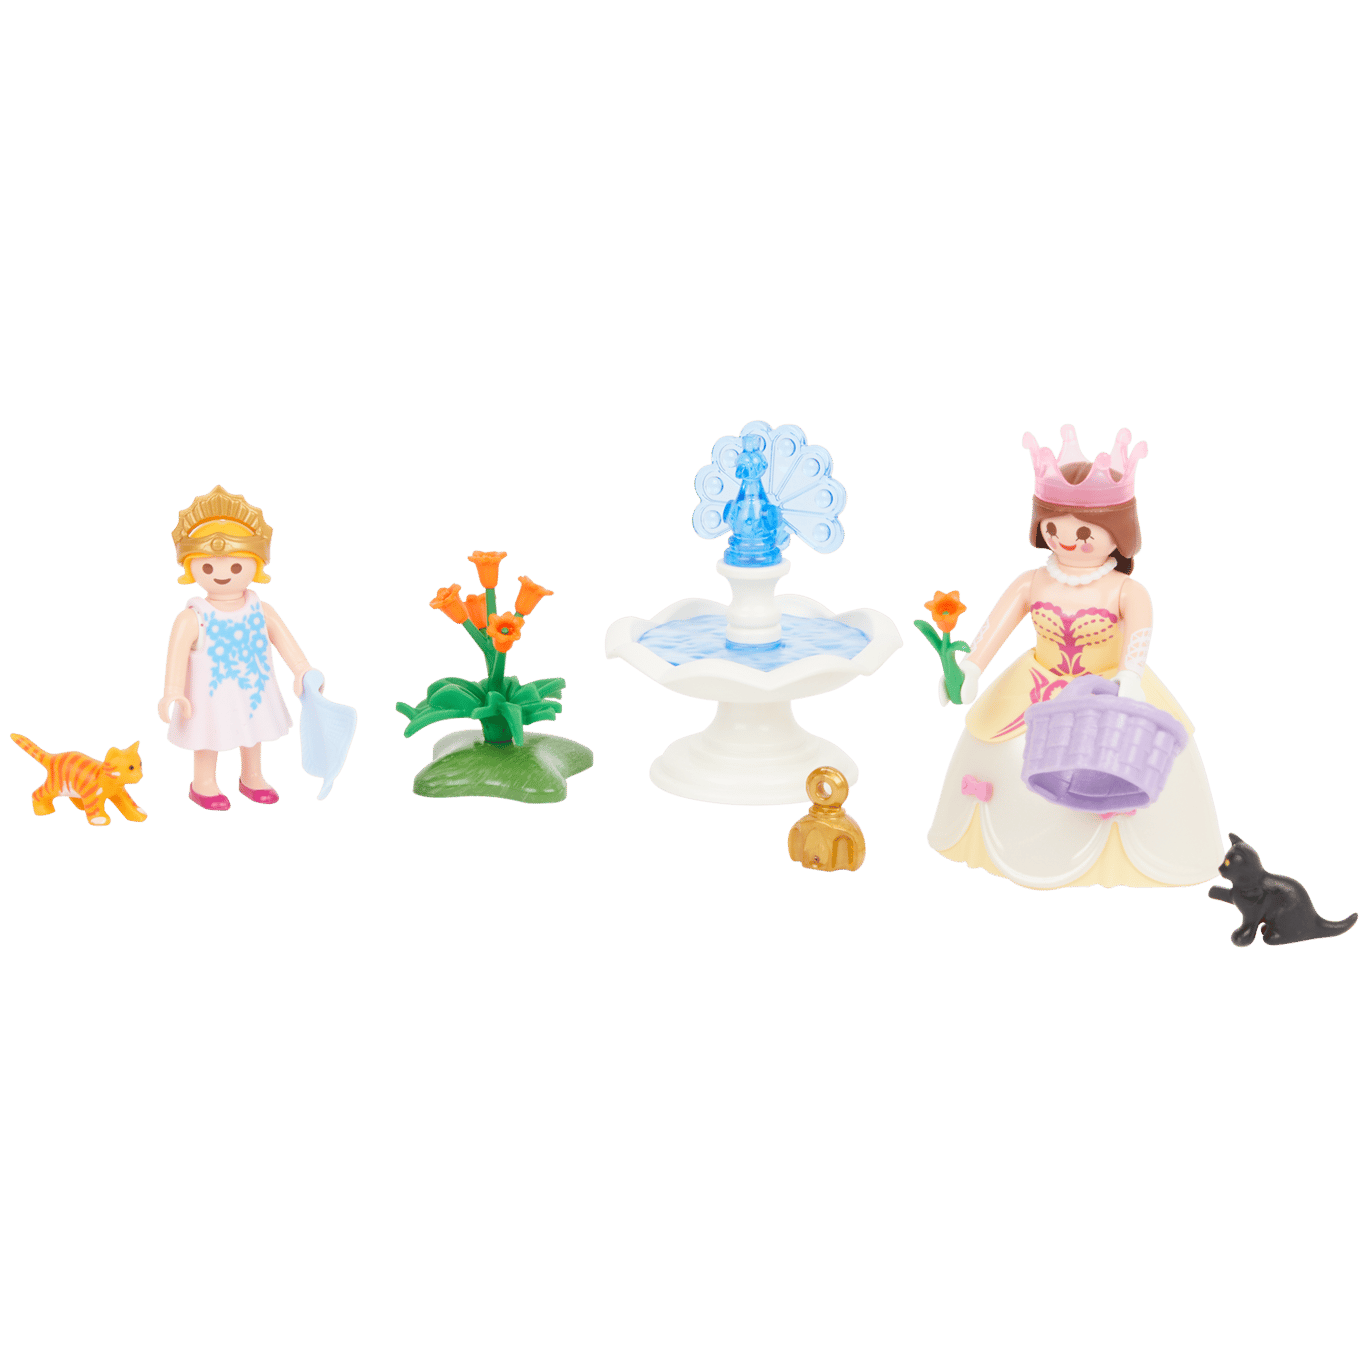 Princezná Playmobil